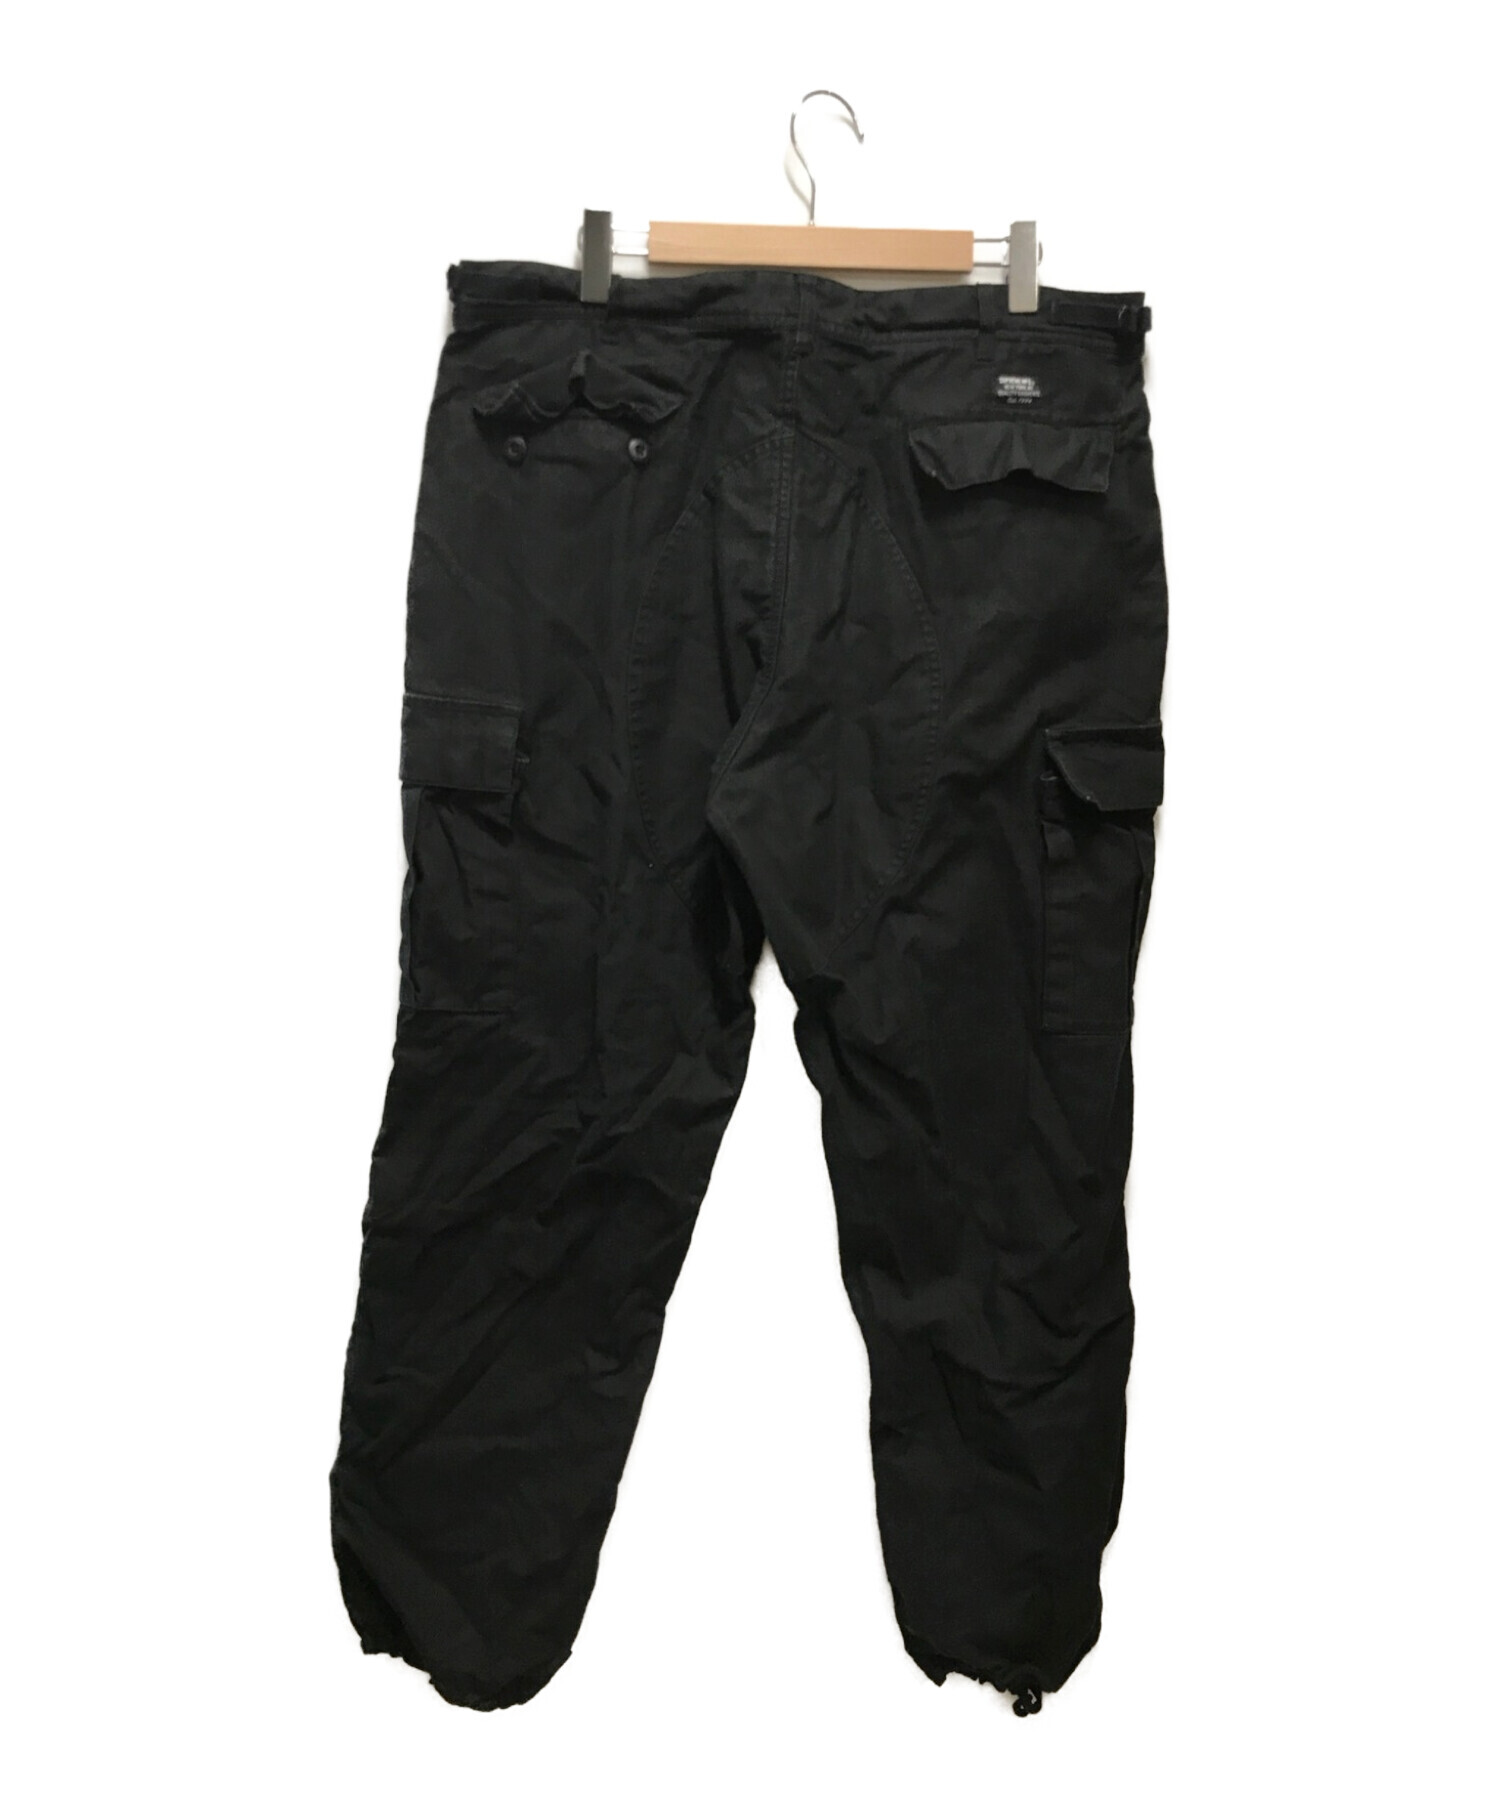 supreme cargo pant black 36 XL